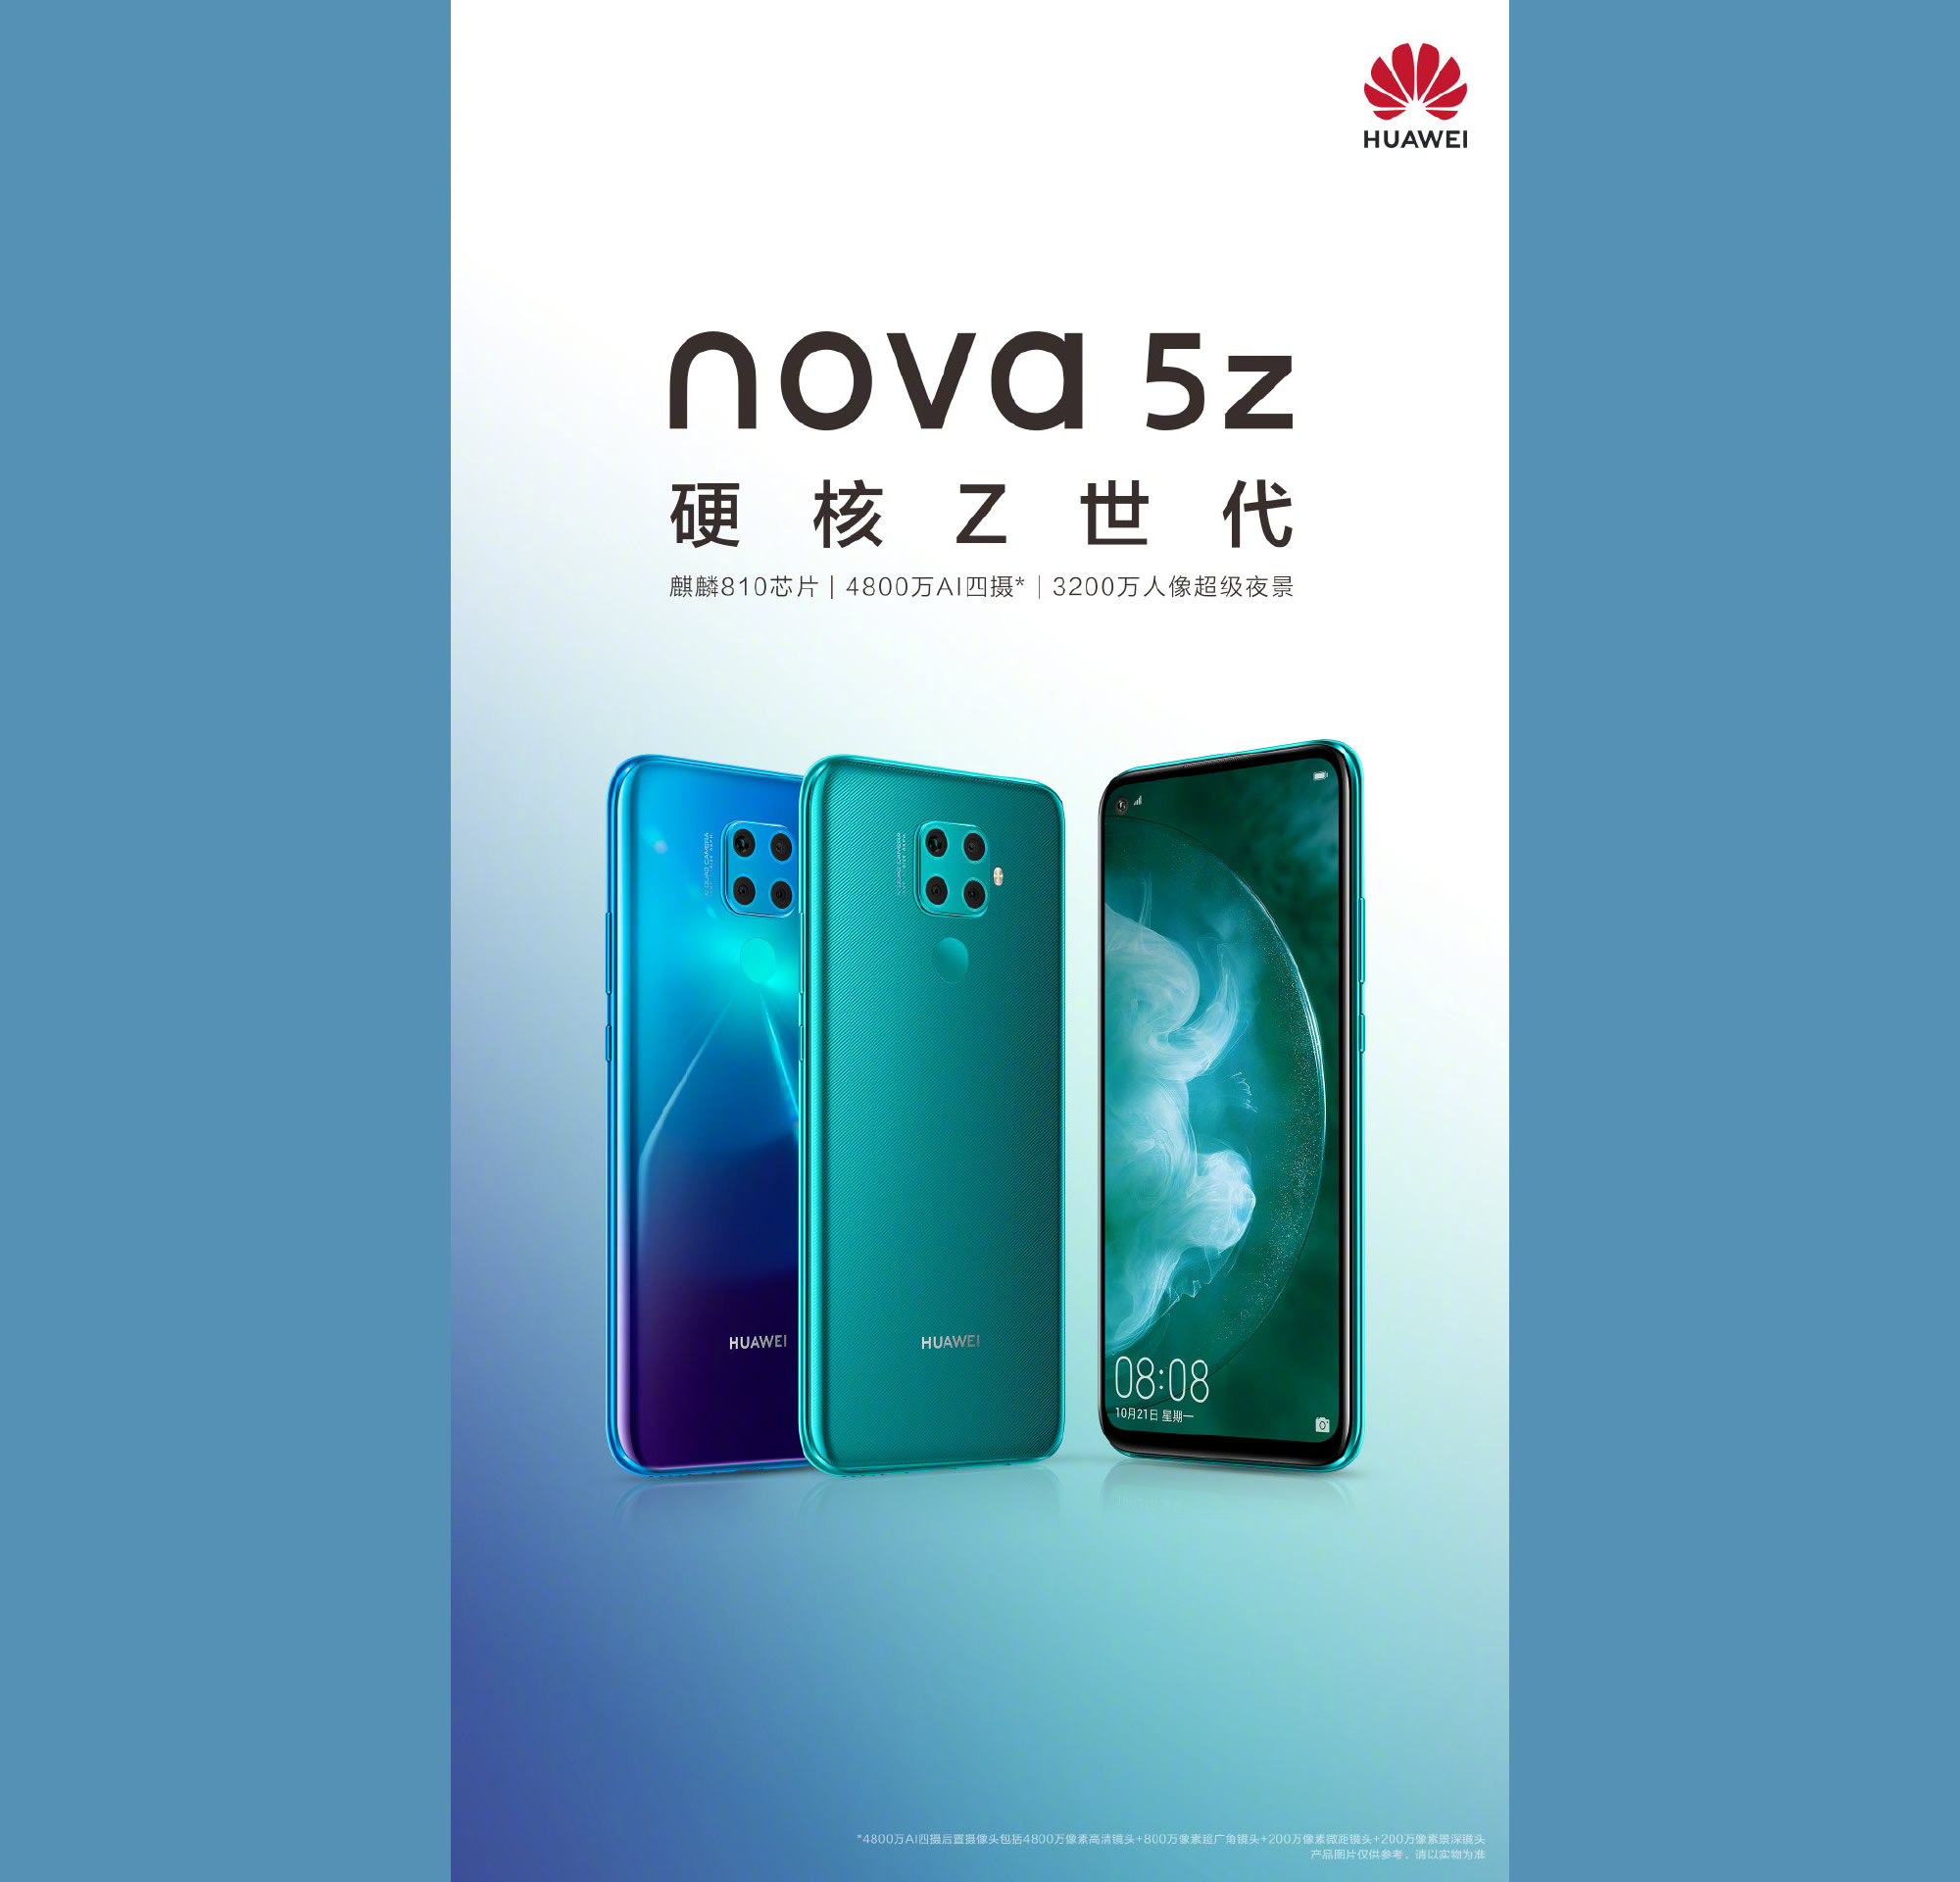 Huawei nova 5z modelinin resmi görseli yayınlandı